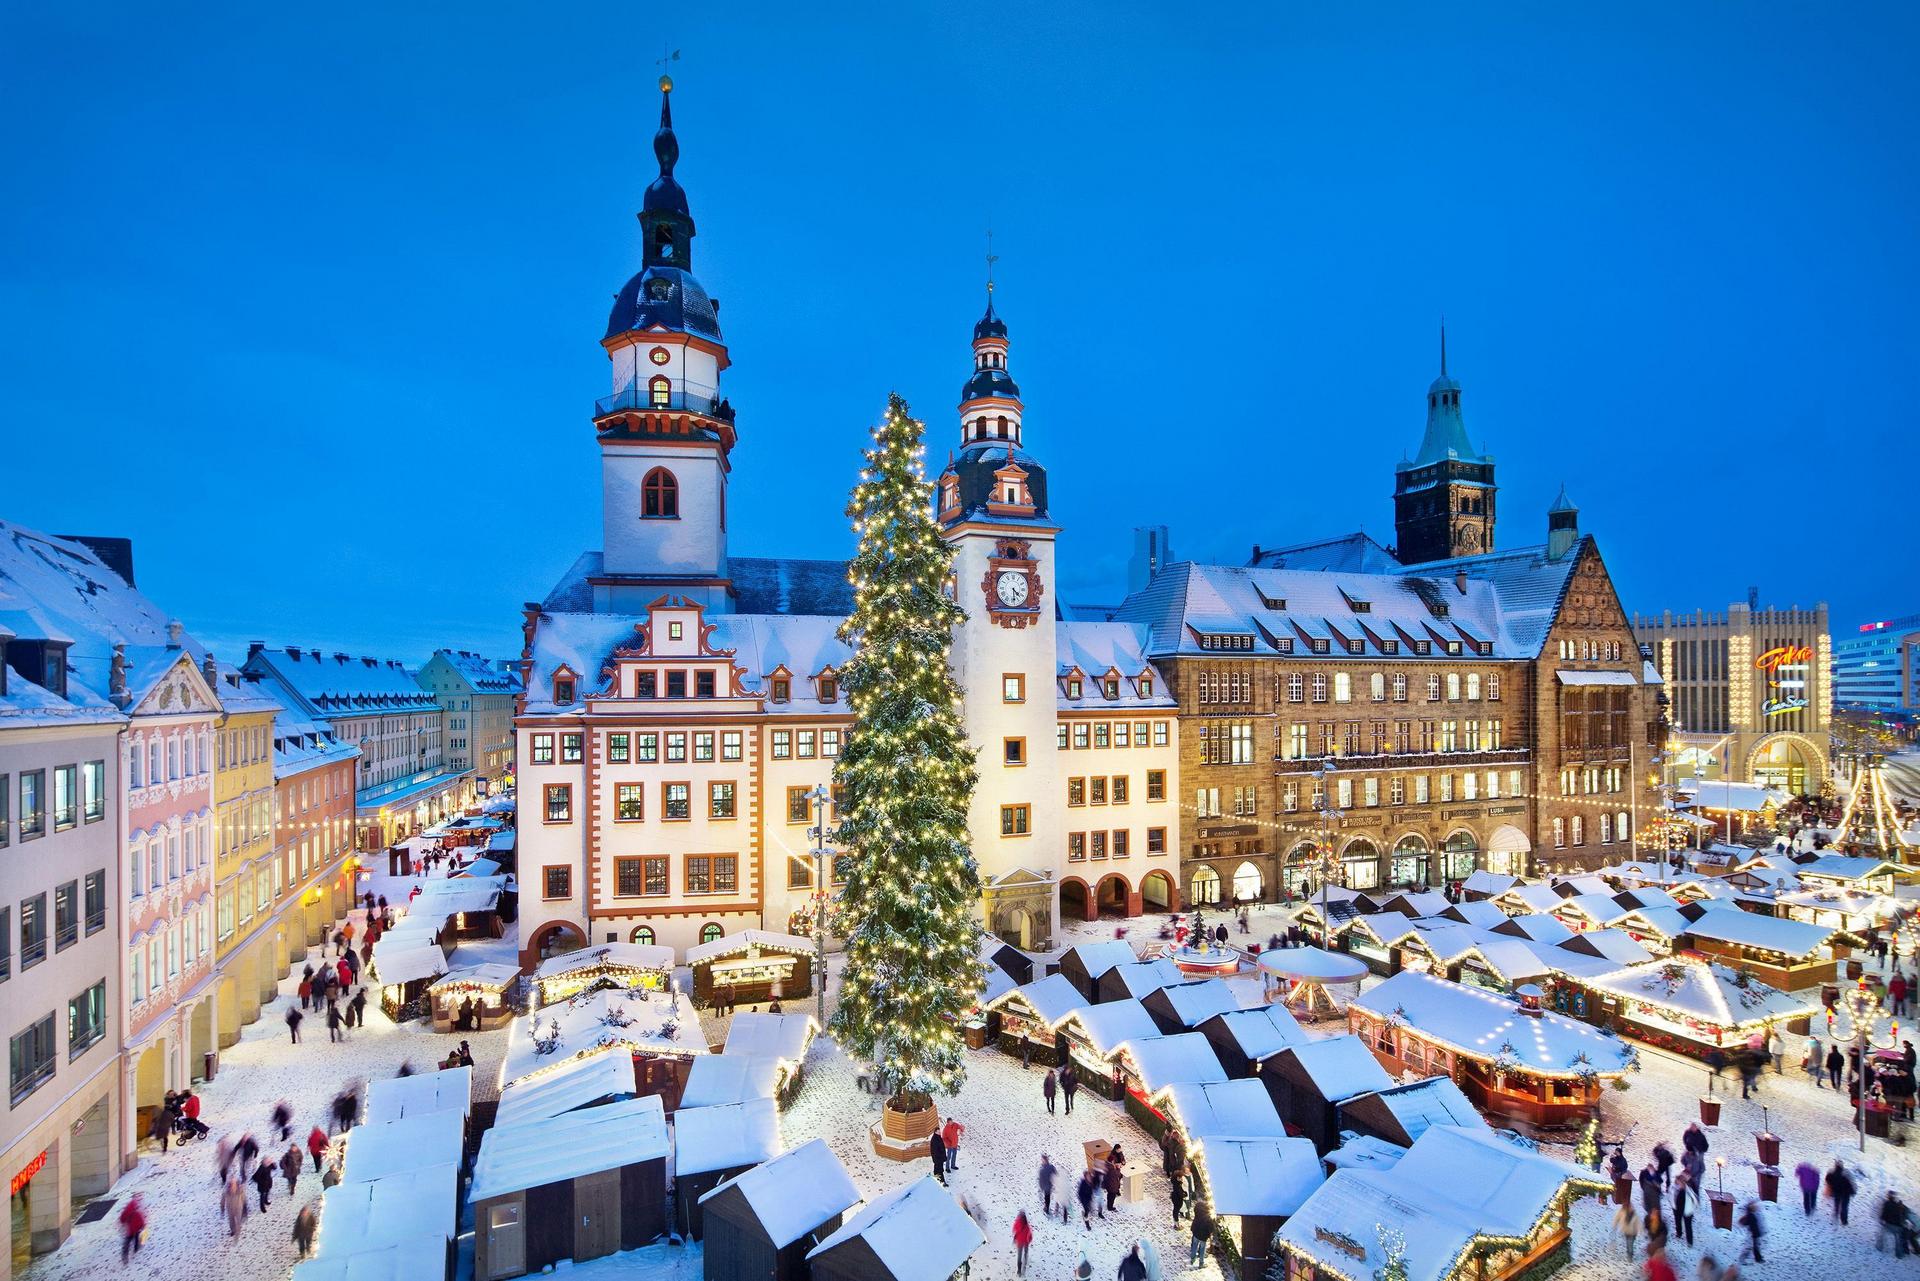 Christmas market in Chemnitz